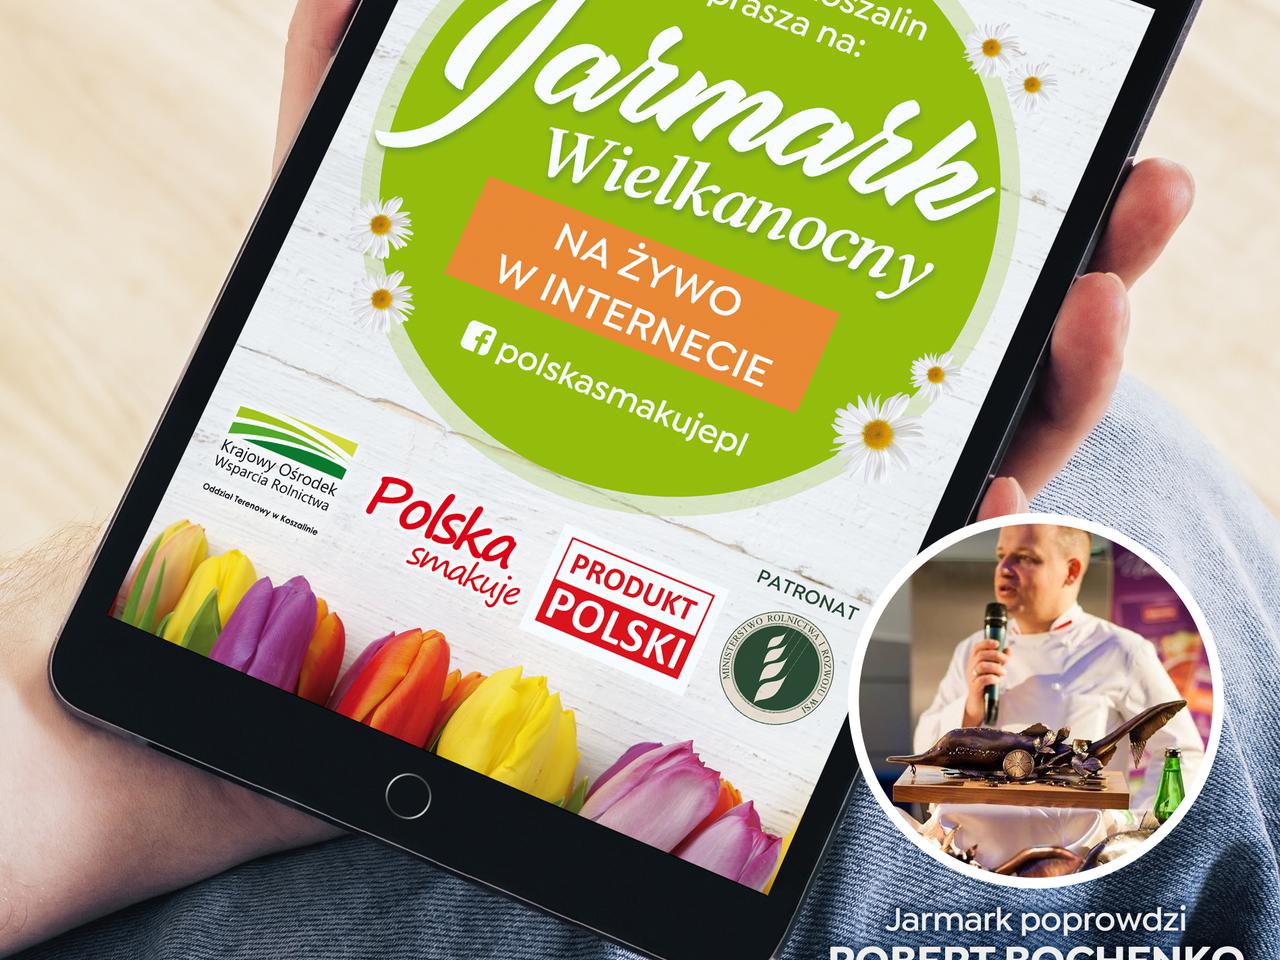 Jarmark Wielkanocny w Koszalinie online! Kup na żywo w internecie lokalne produkty